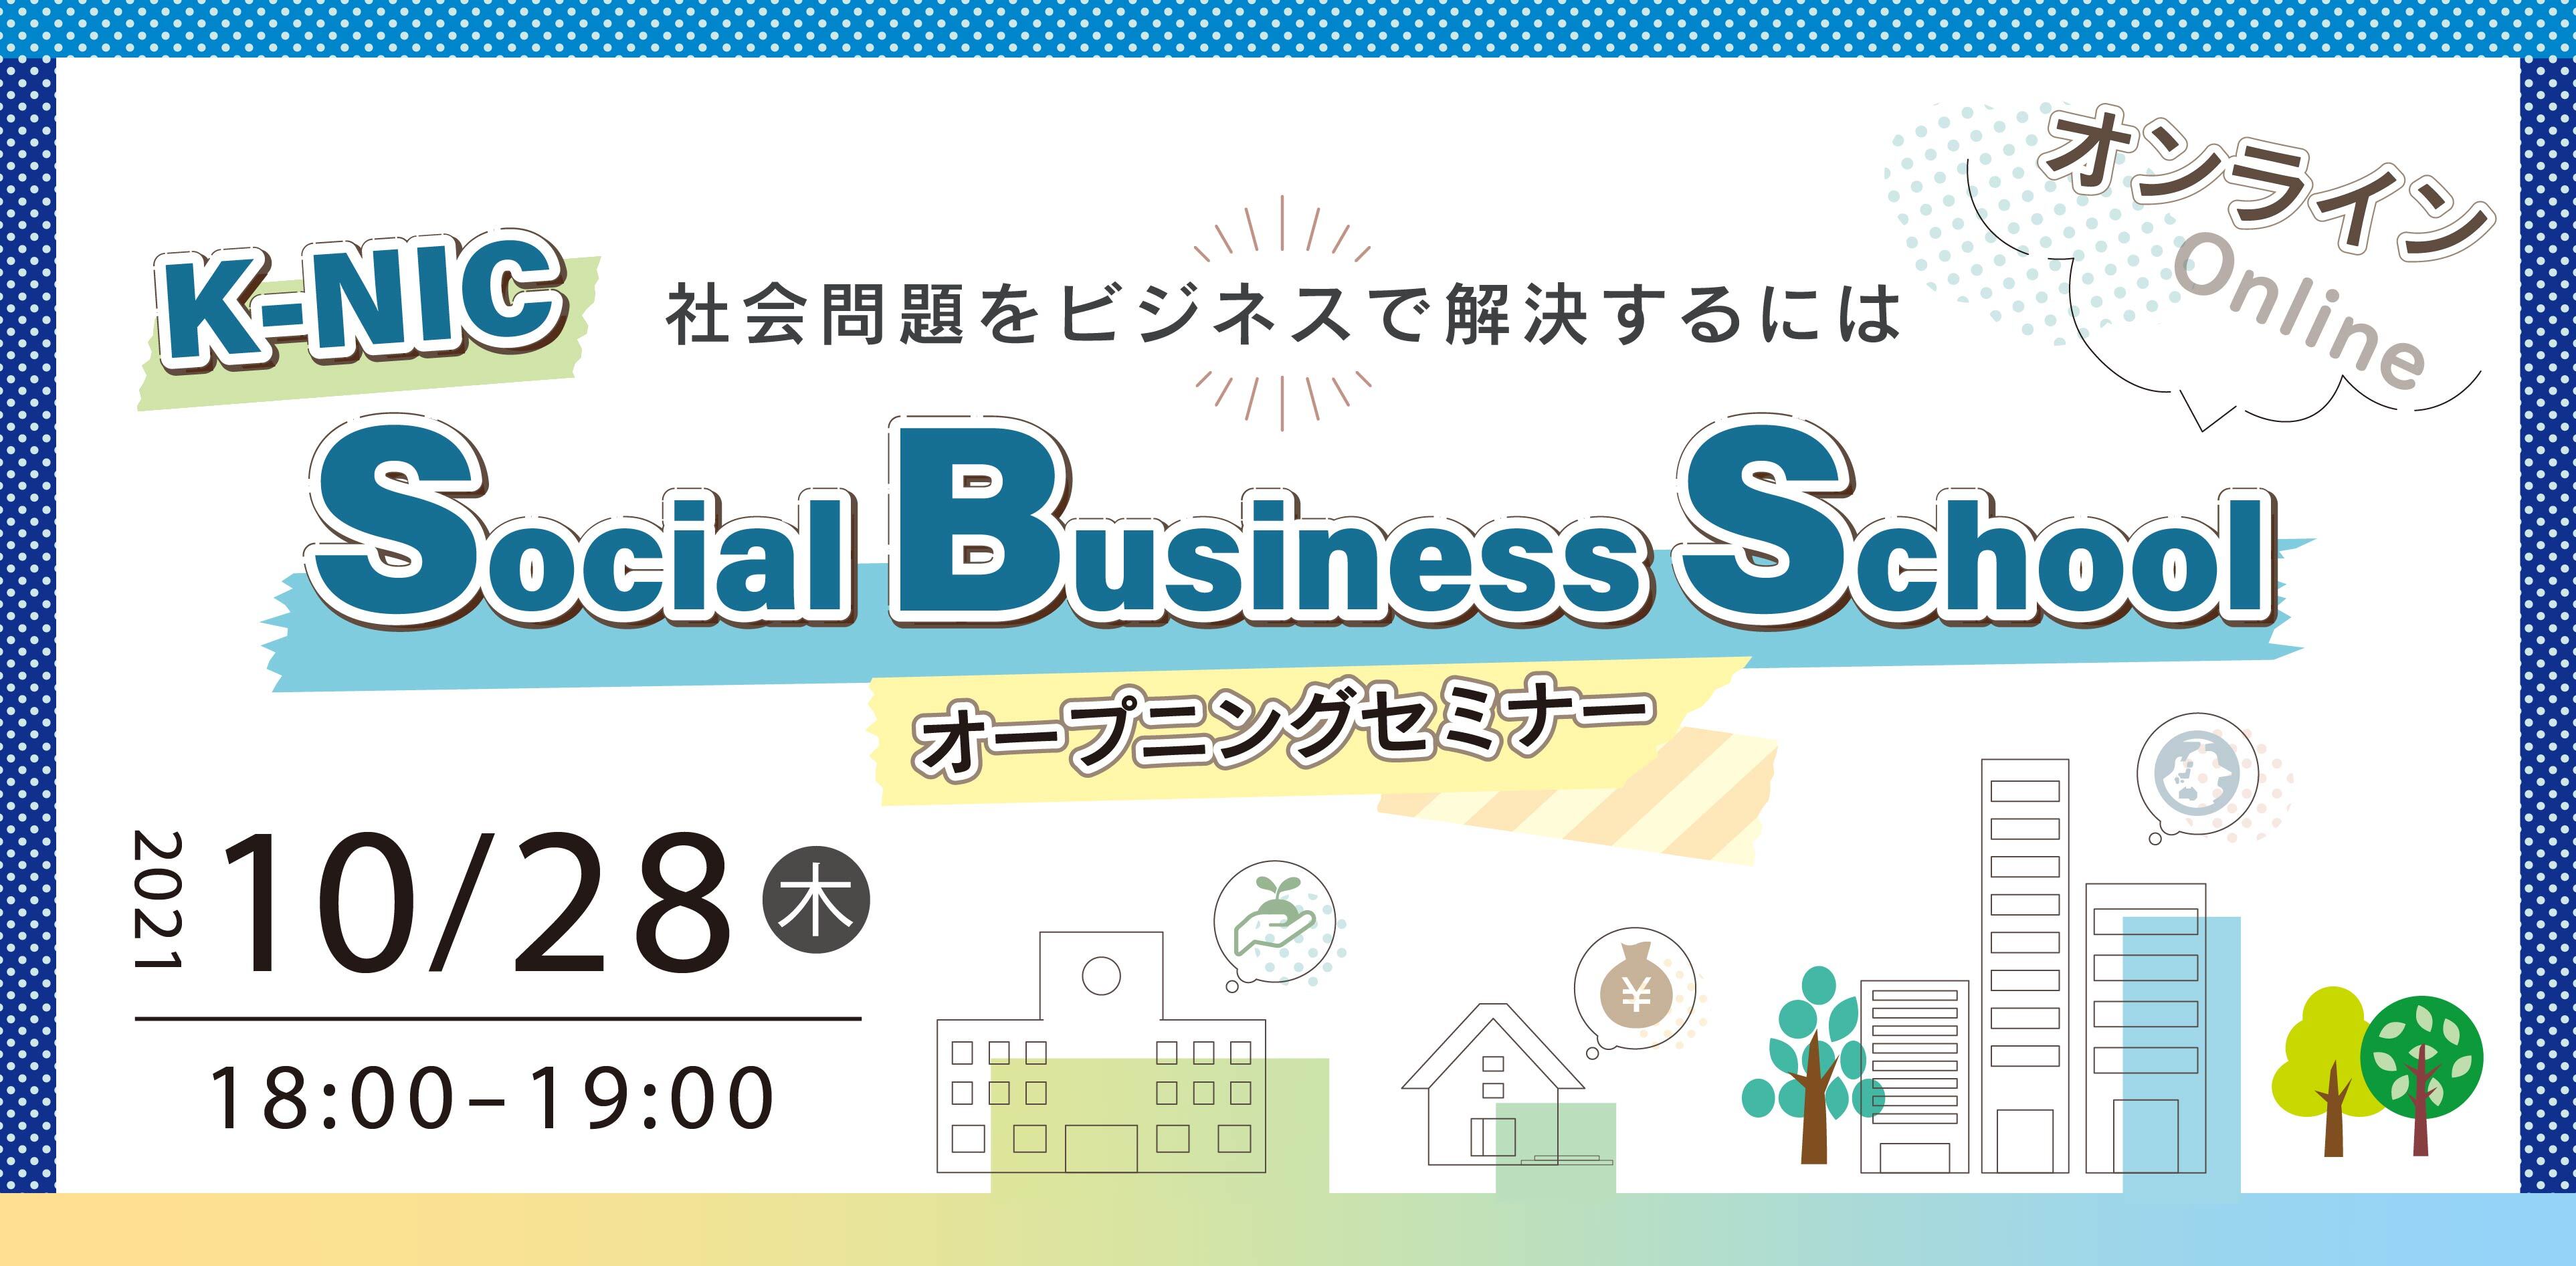 【10/28開催】オープニングセミナー K-NIC Social Business School ~社会問題をビジネスで解決するには~